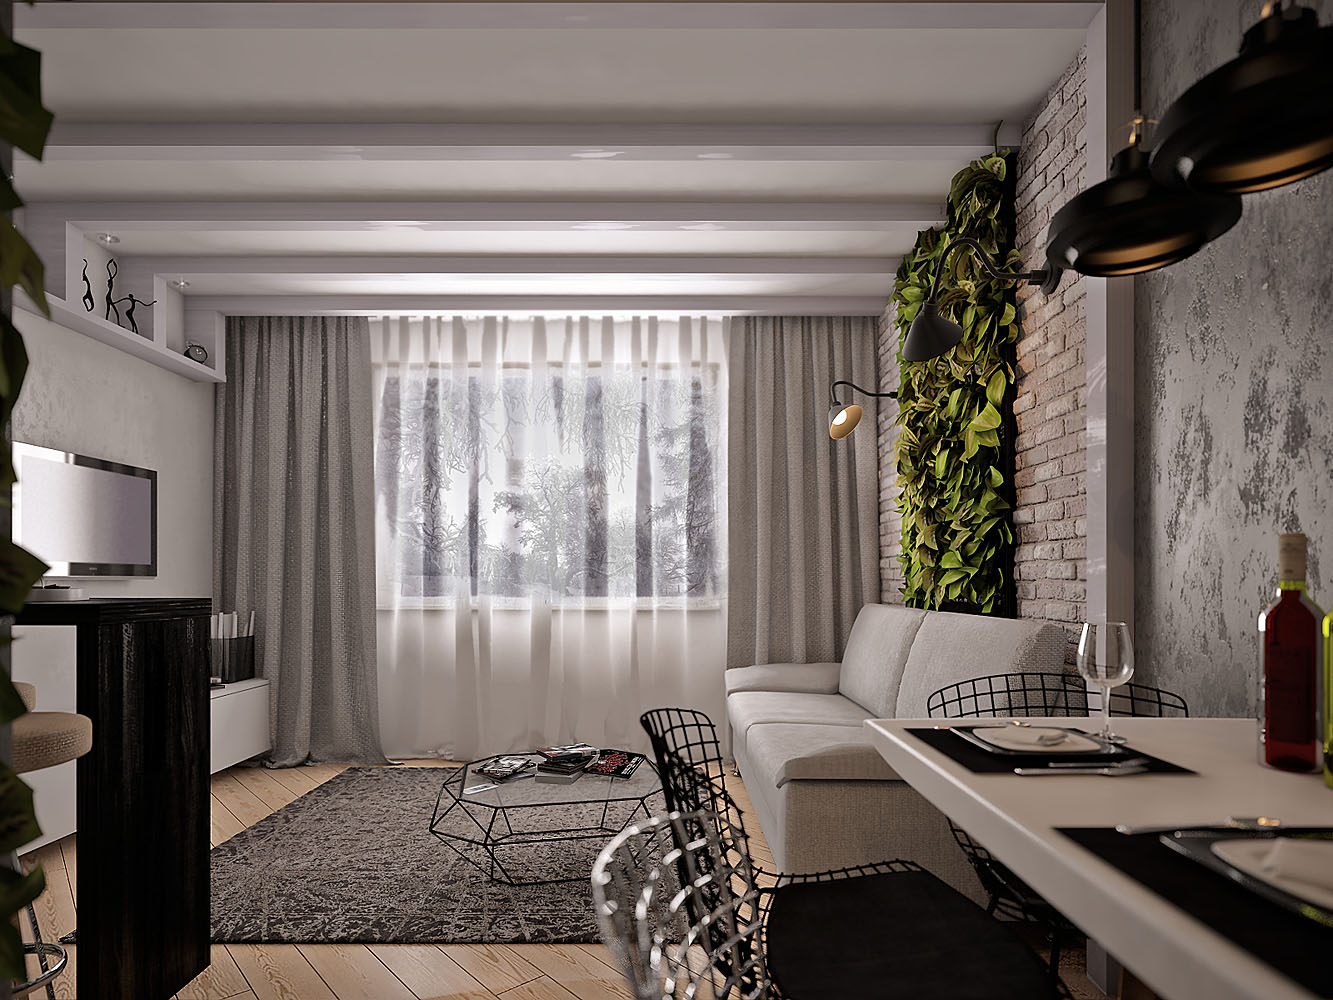 Гостиная в стиле лофт в квартире: фото интерьеров, маленькие и большие, совмещенные со спальней или кухней, дизайн с классикой, выбор мебели от кровати до стенки